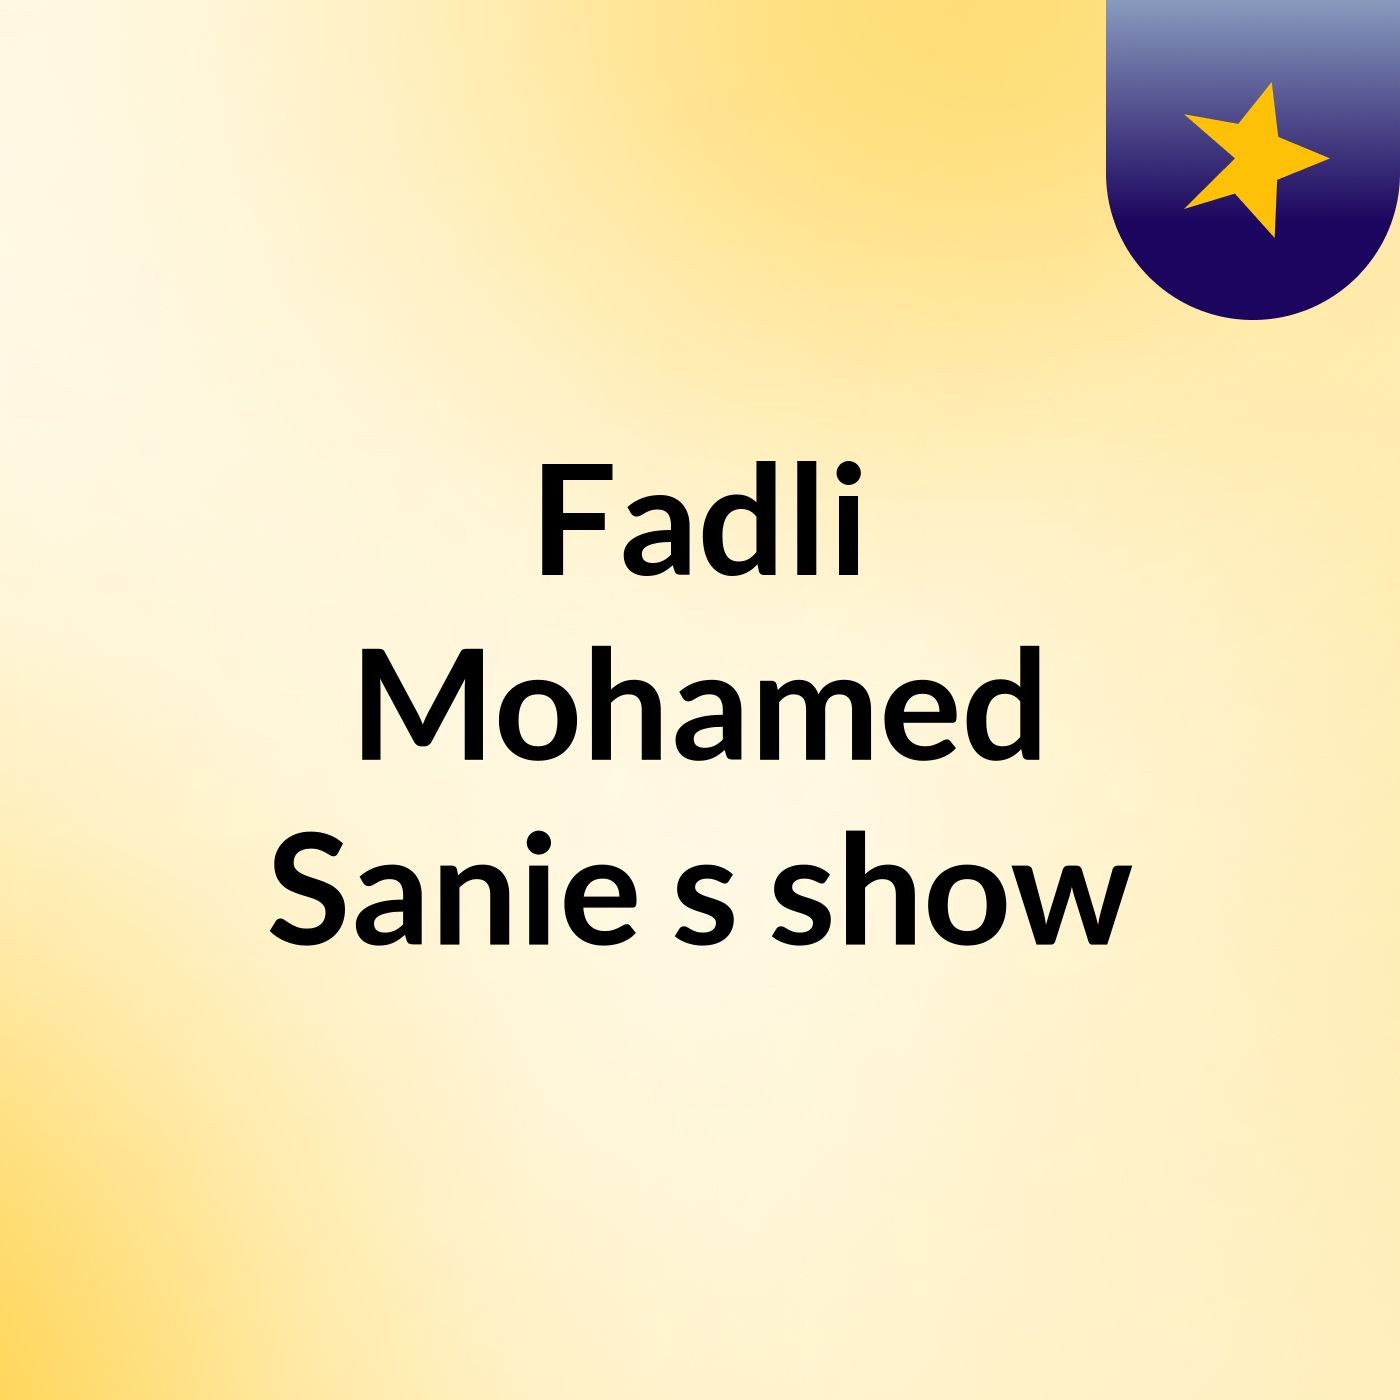 Episode 19 - Fadli Mohamed Sanie's show